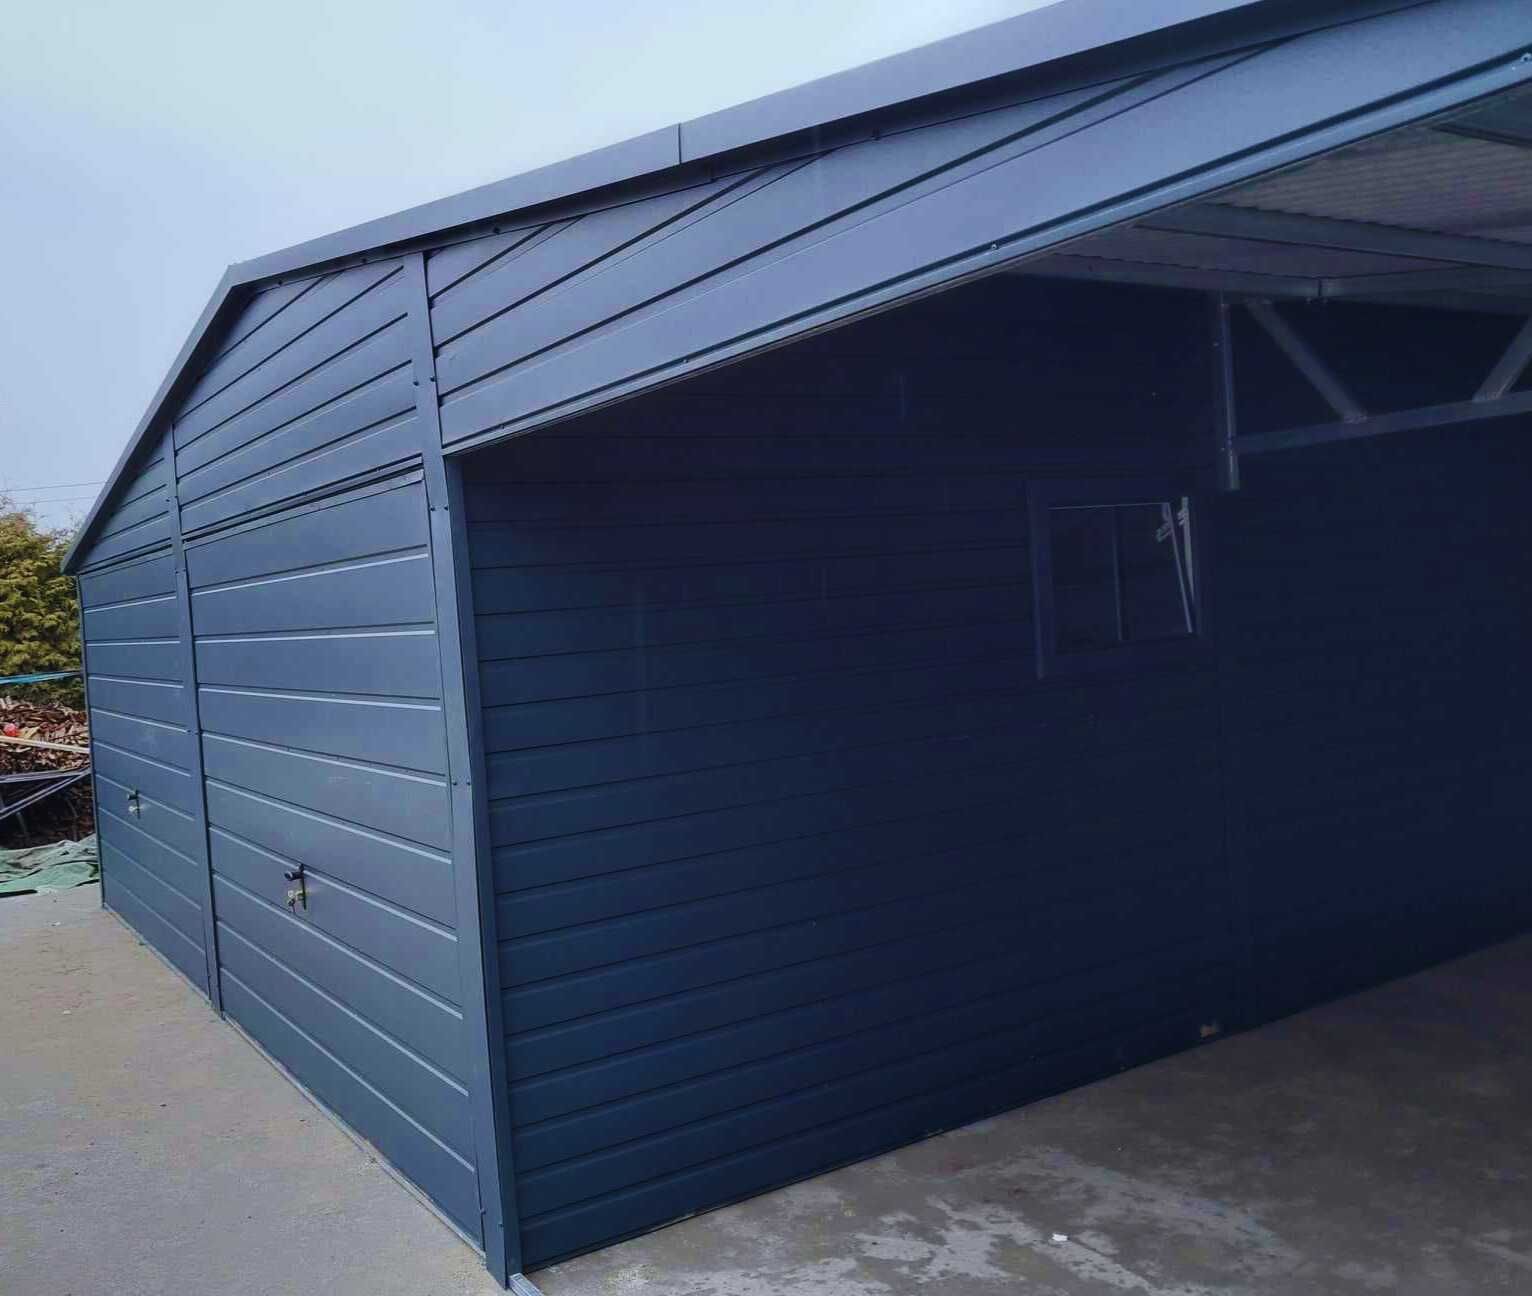 Garaż blaszany z wiatą 9x5m garaz ogrodowy trzy stanowiska |10x6 12x8|